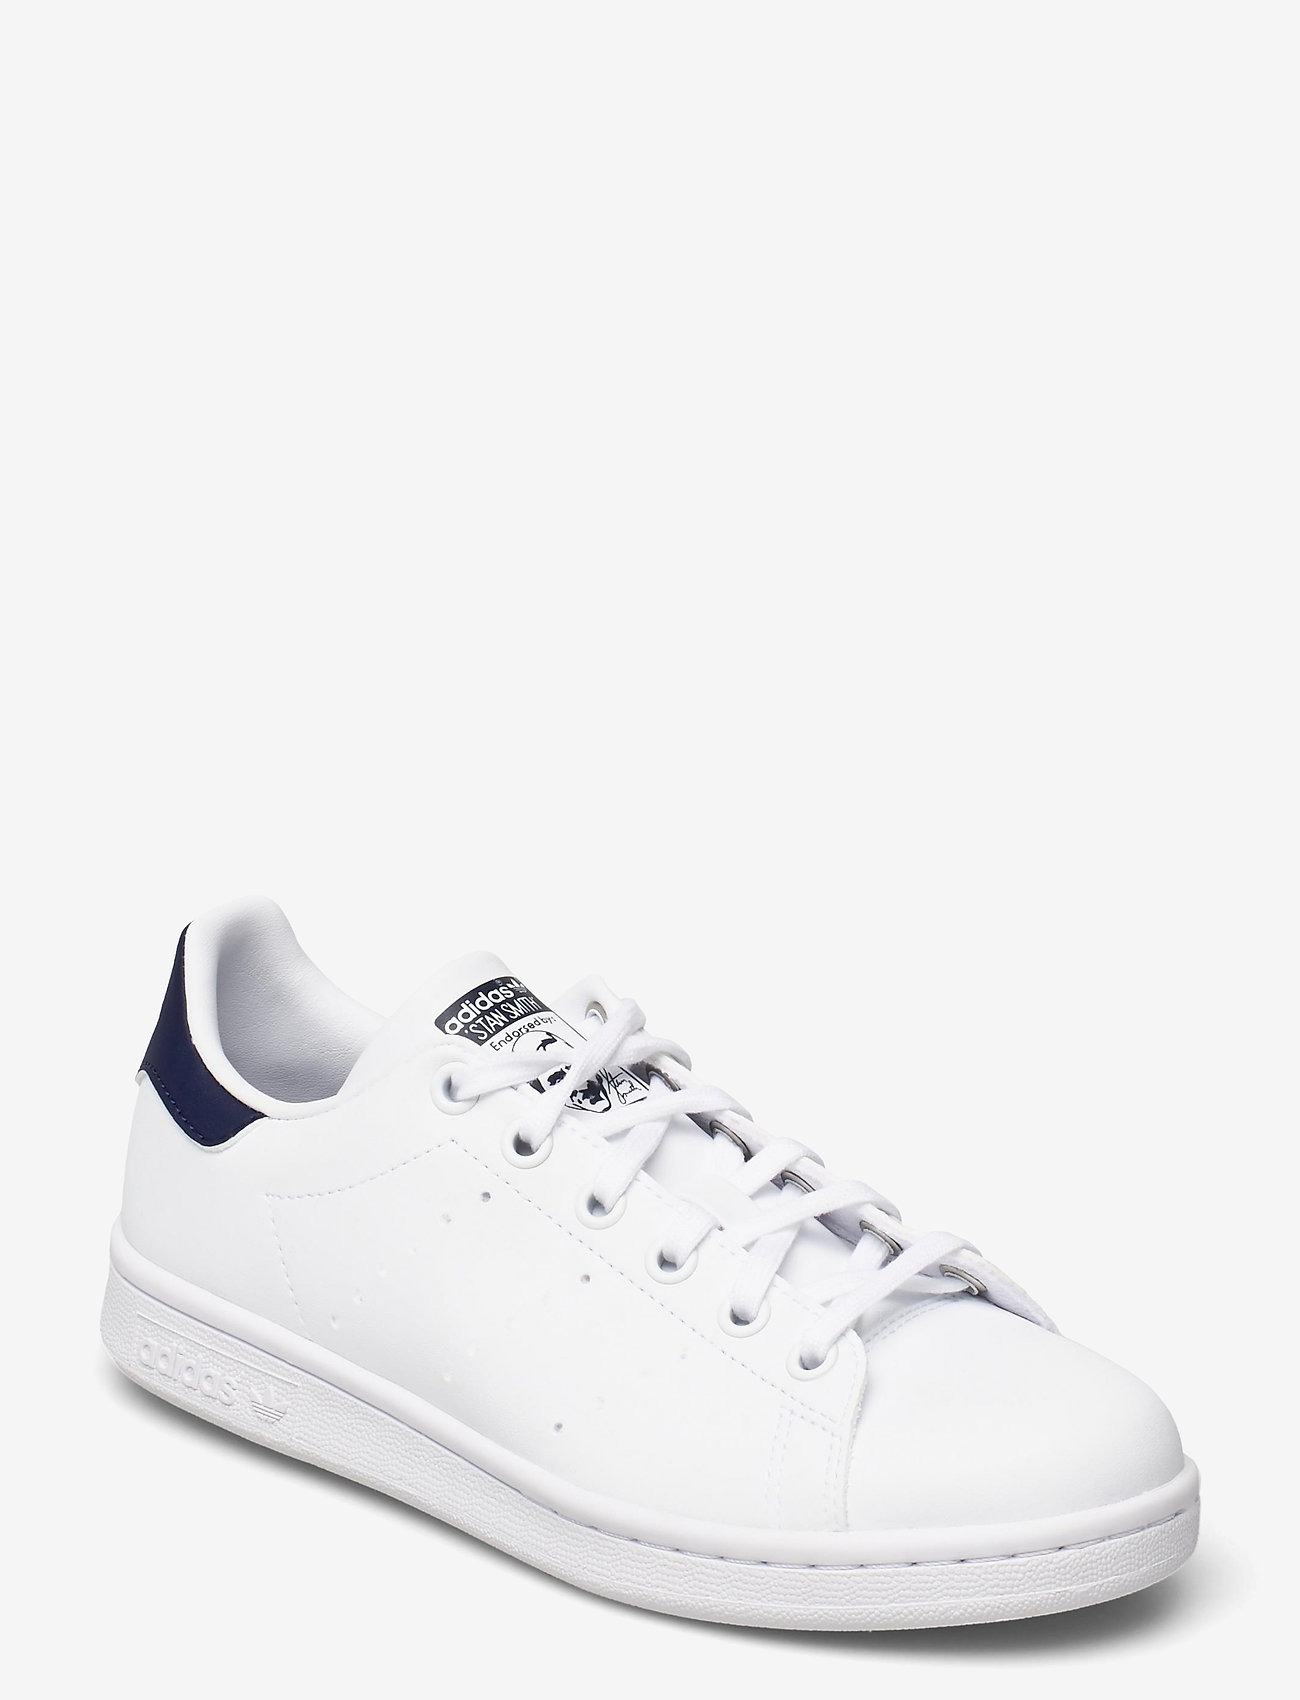 adidas Originals - STAN SMITH J - låga sneakers - ftwwht/ftwwht/dkblue - 1